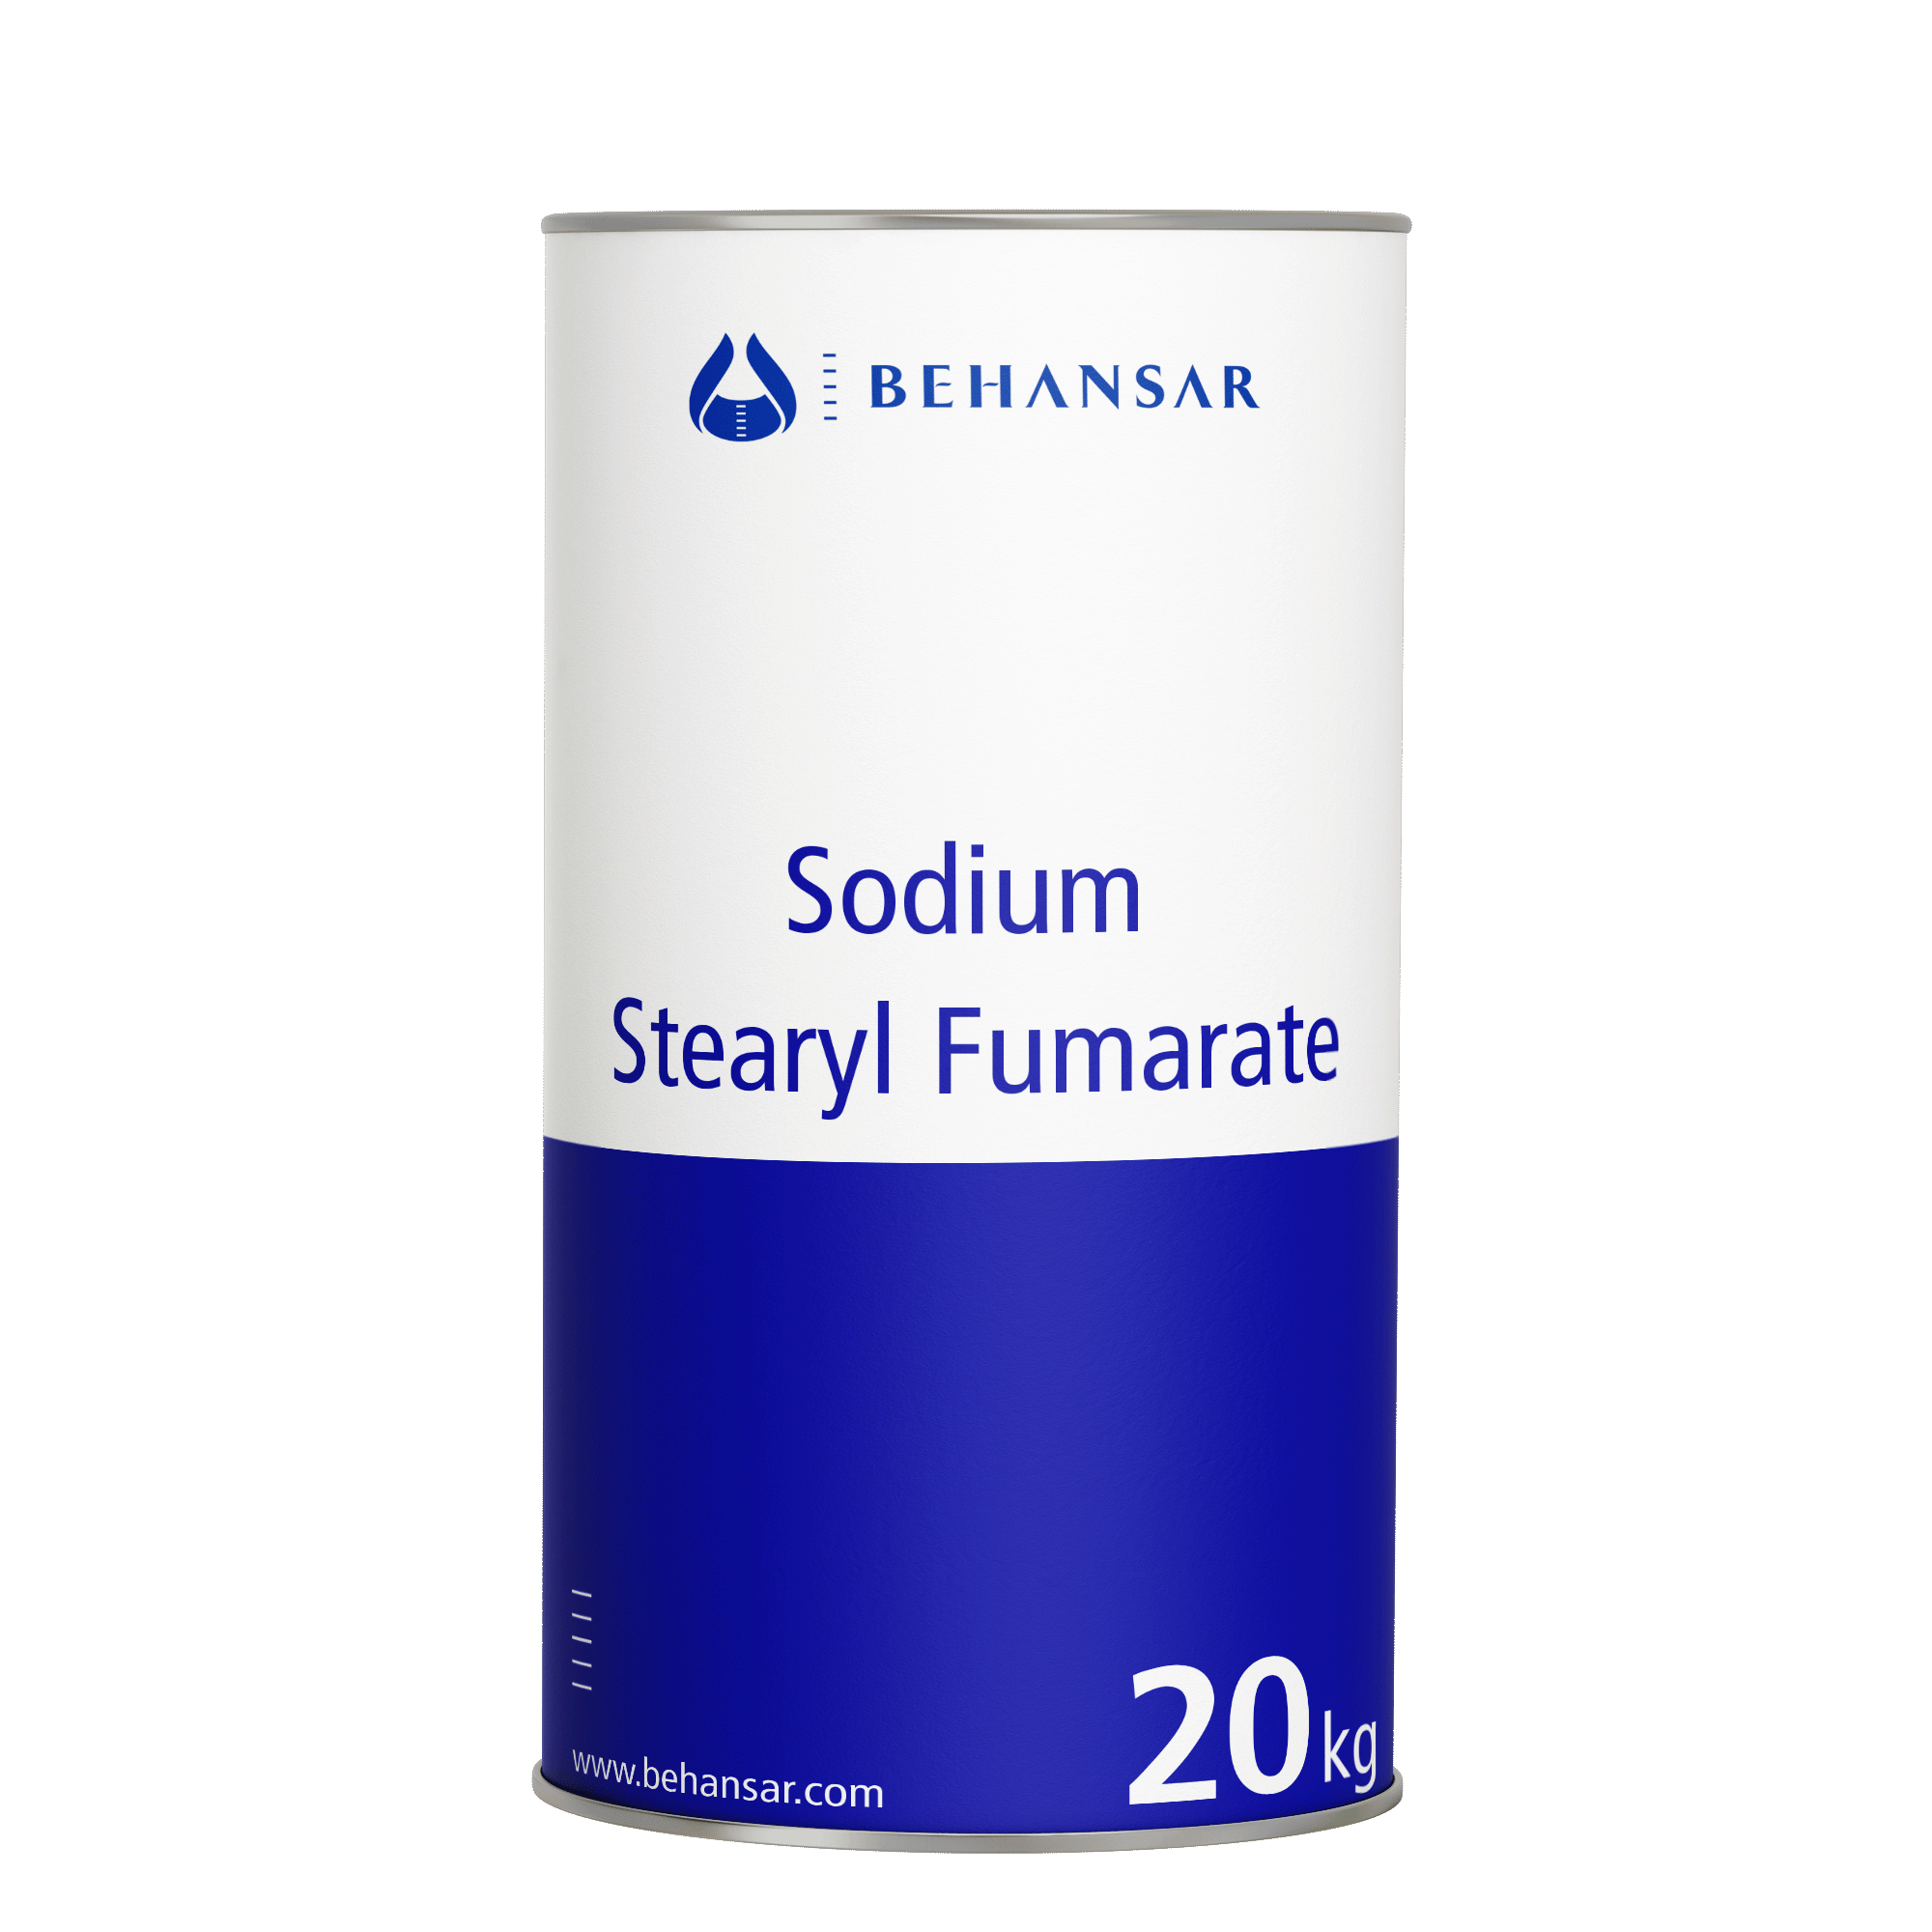 سدیم استئاریل فومارات یکی از تولیدات شرکت بهانسار است